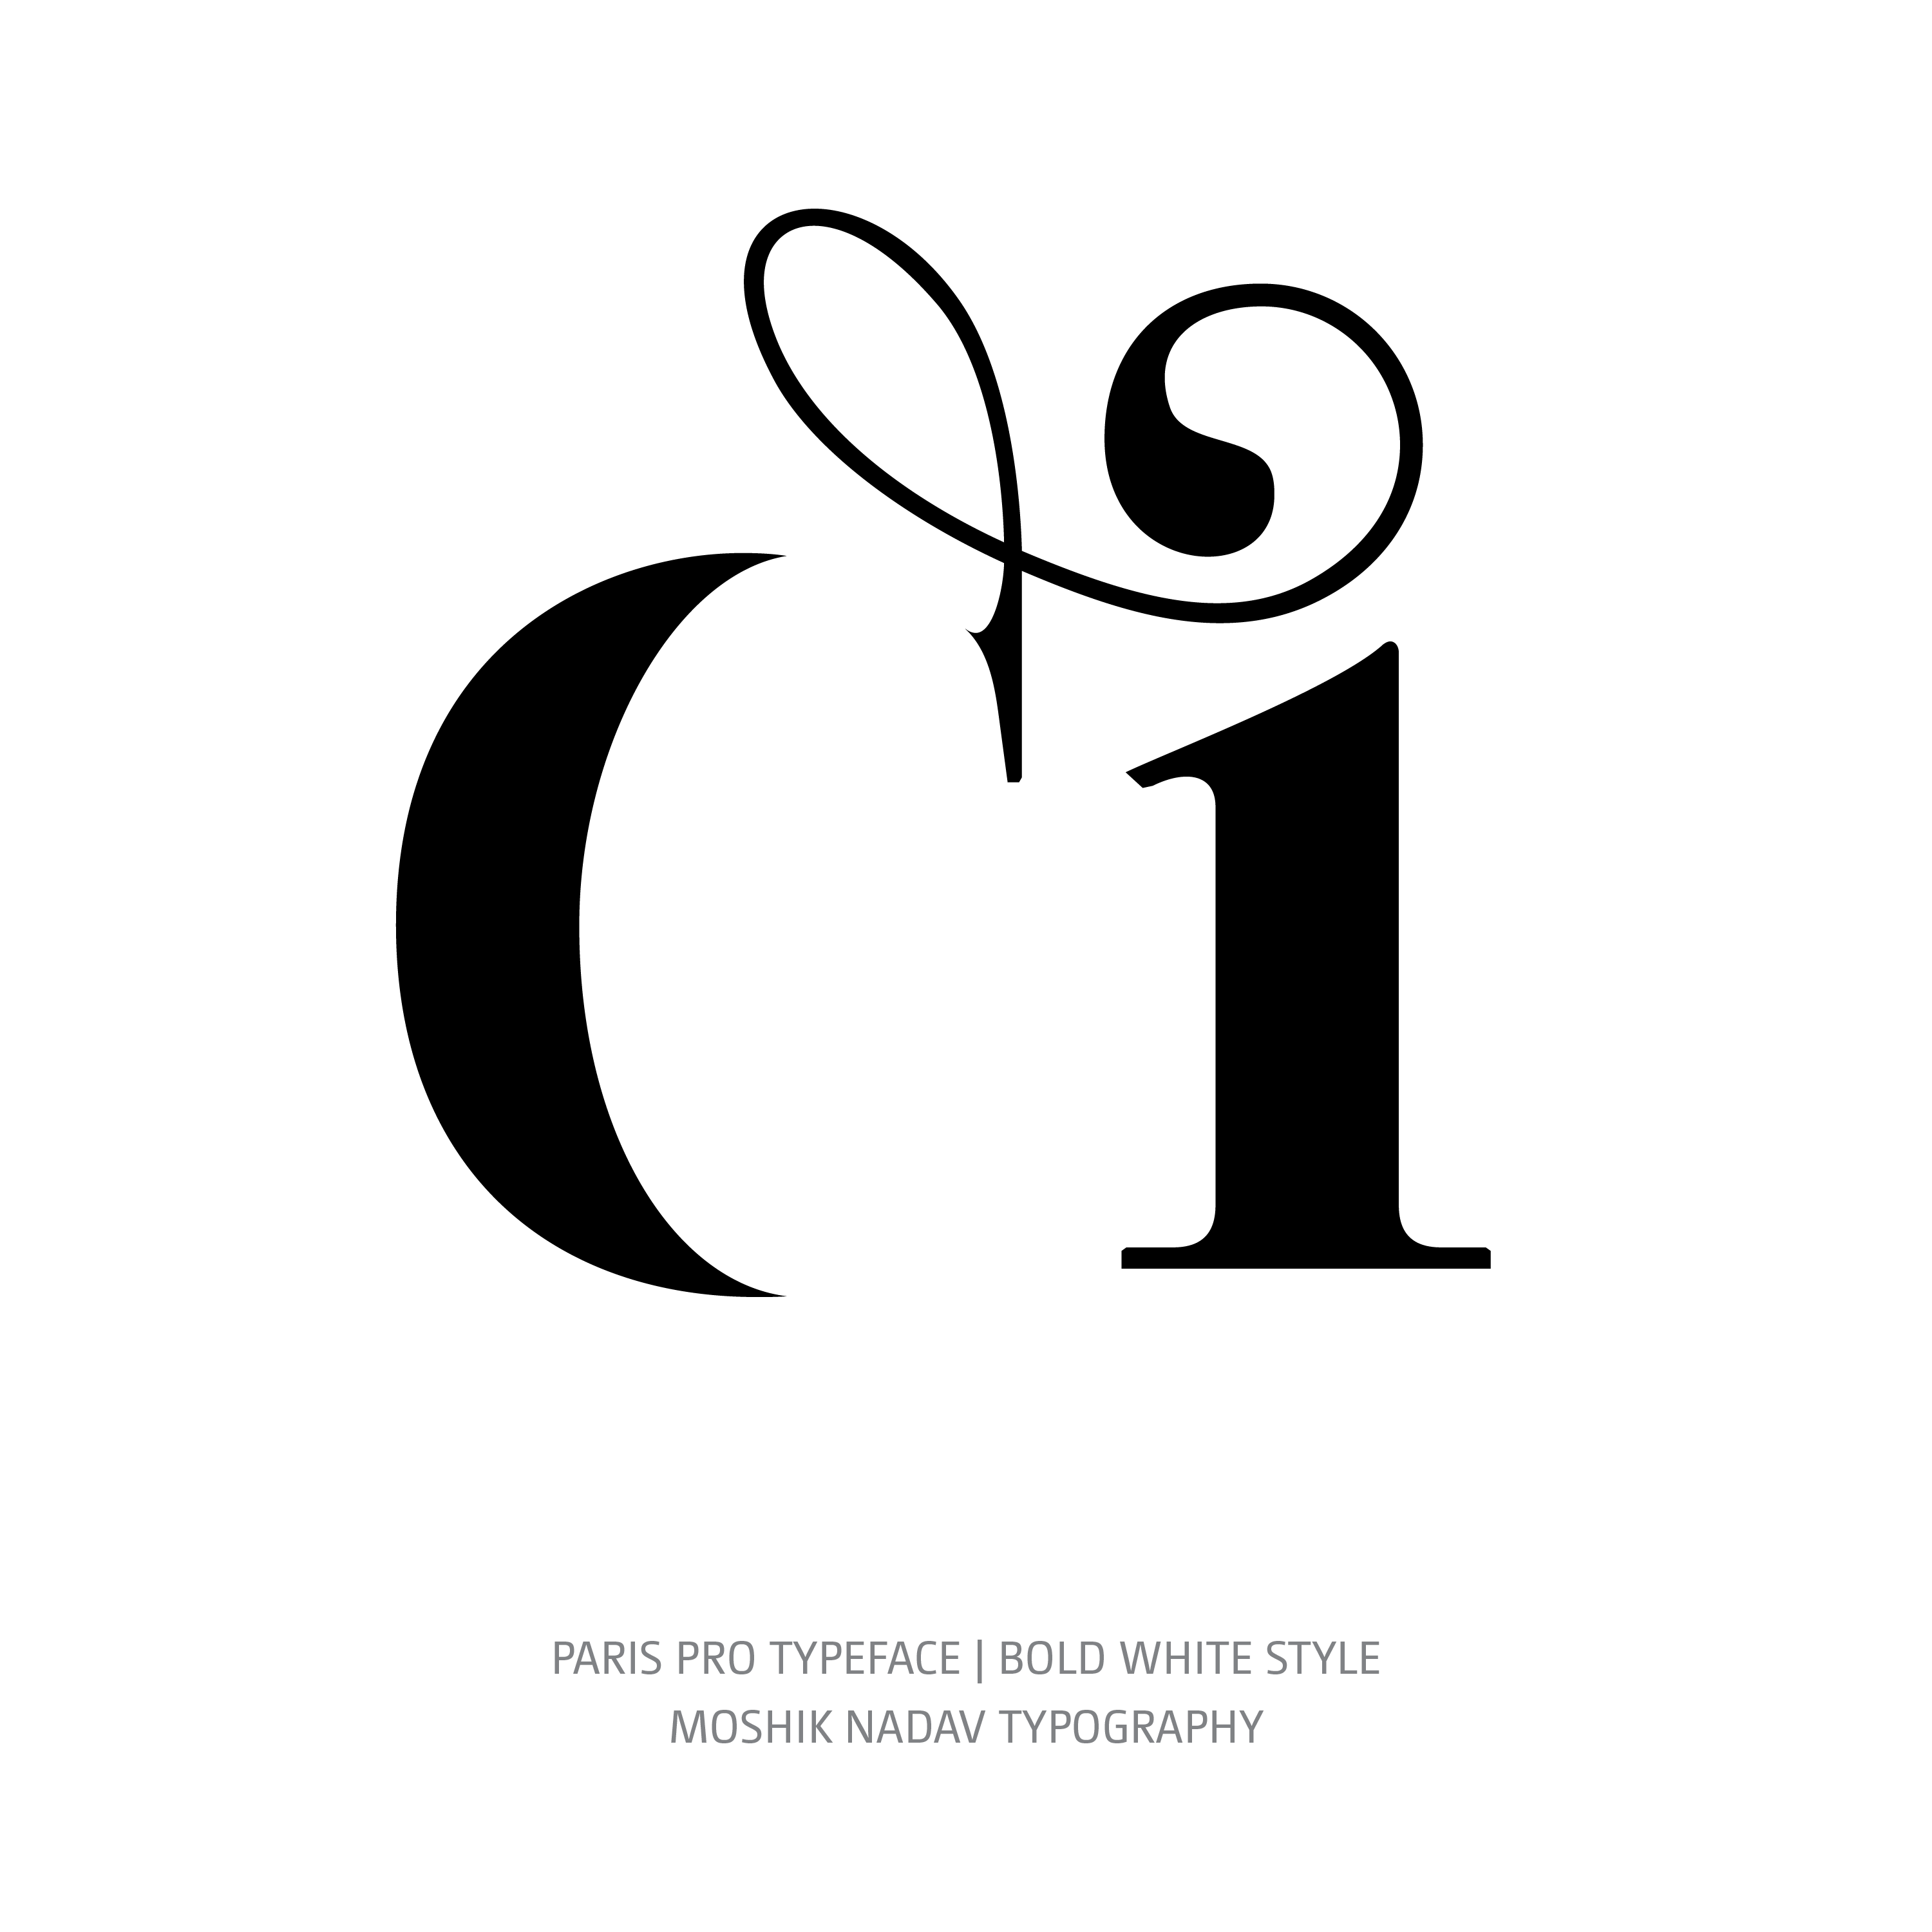 Paris Pro Typeface Bold White ci ligature